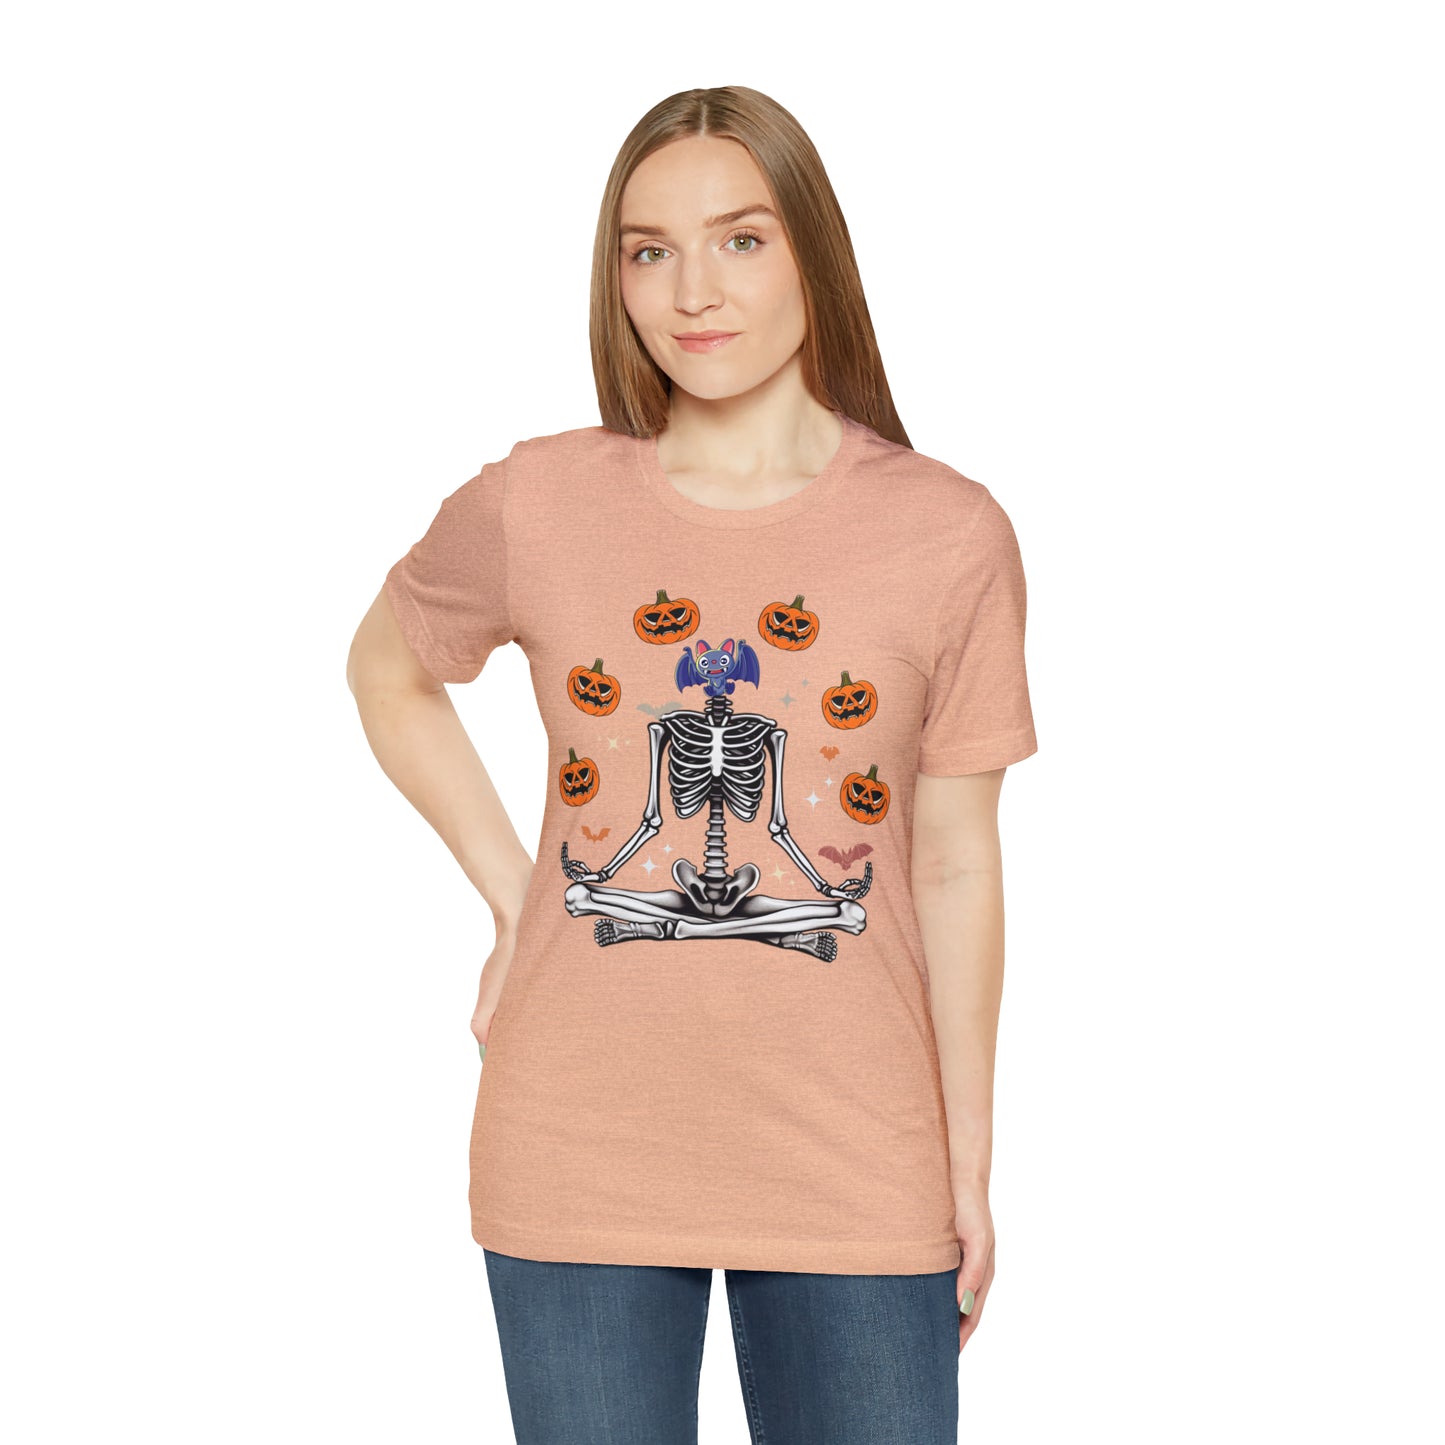 Skeleton Pumpkin Shirt, Cute Pumpkin Shirt, Halloween Costume, Ribcage Skeleton Shirt, Pumpkin Shirt, Pumpkin Costume, T727